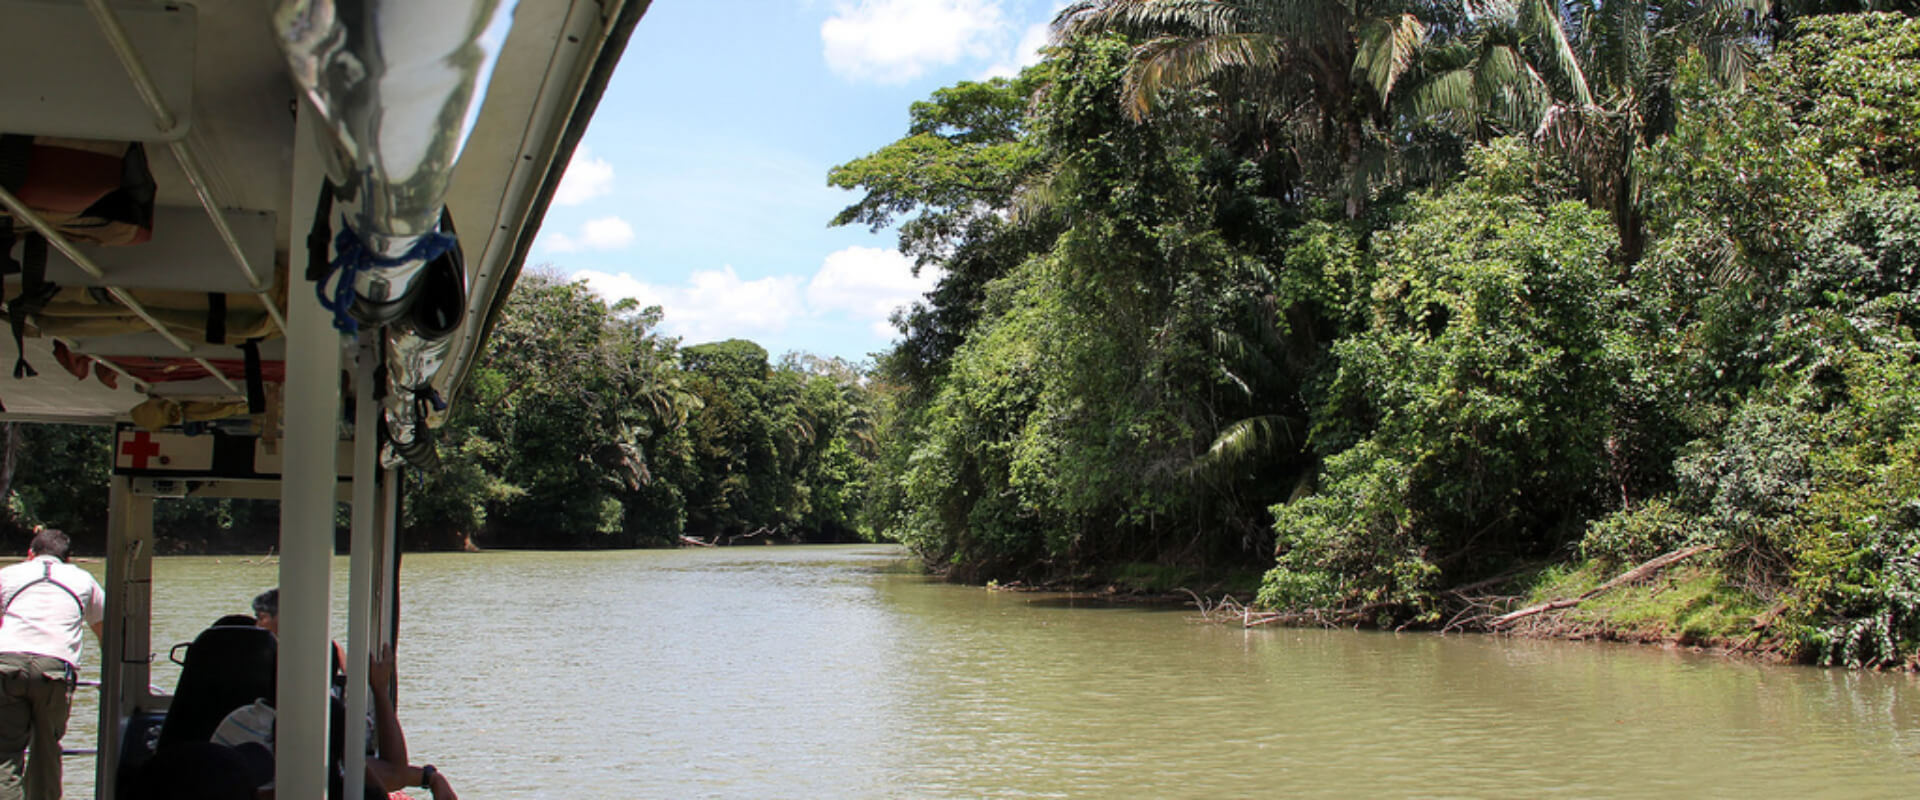 Caño Negro Wildlife Refuge Boat Tour Rio Frio | Costa Rica Jade Tours